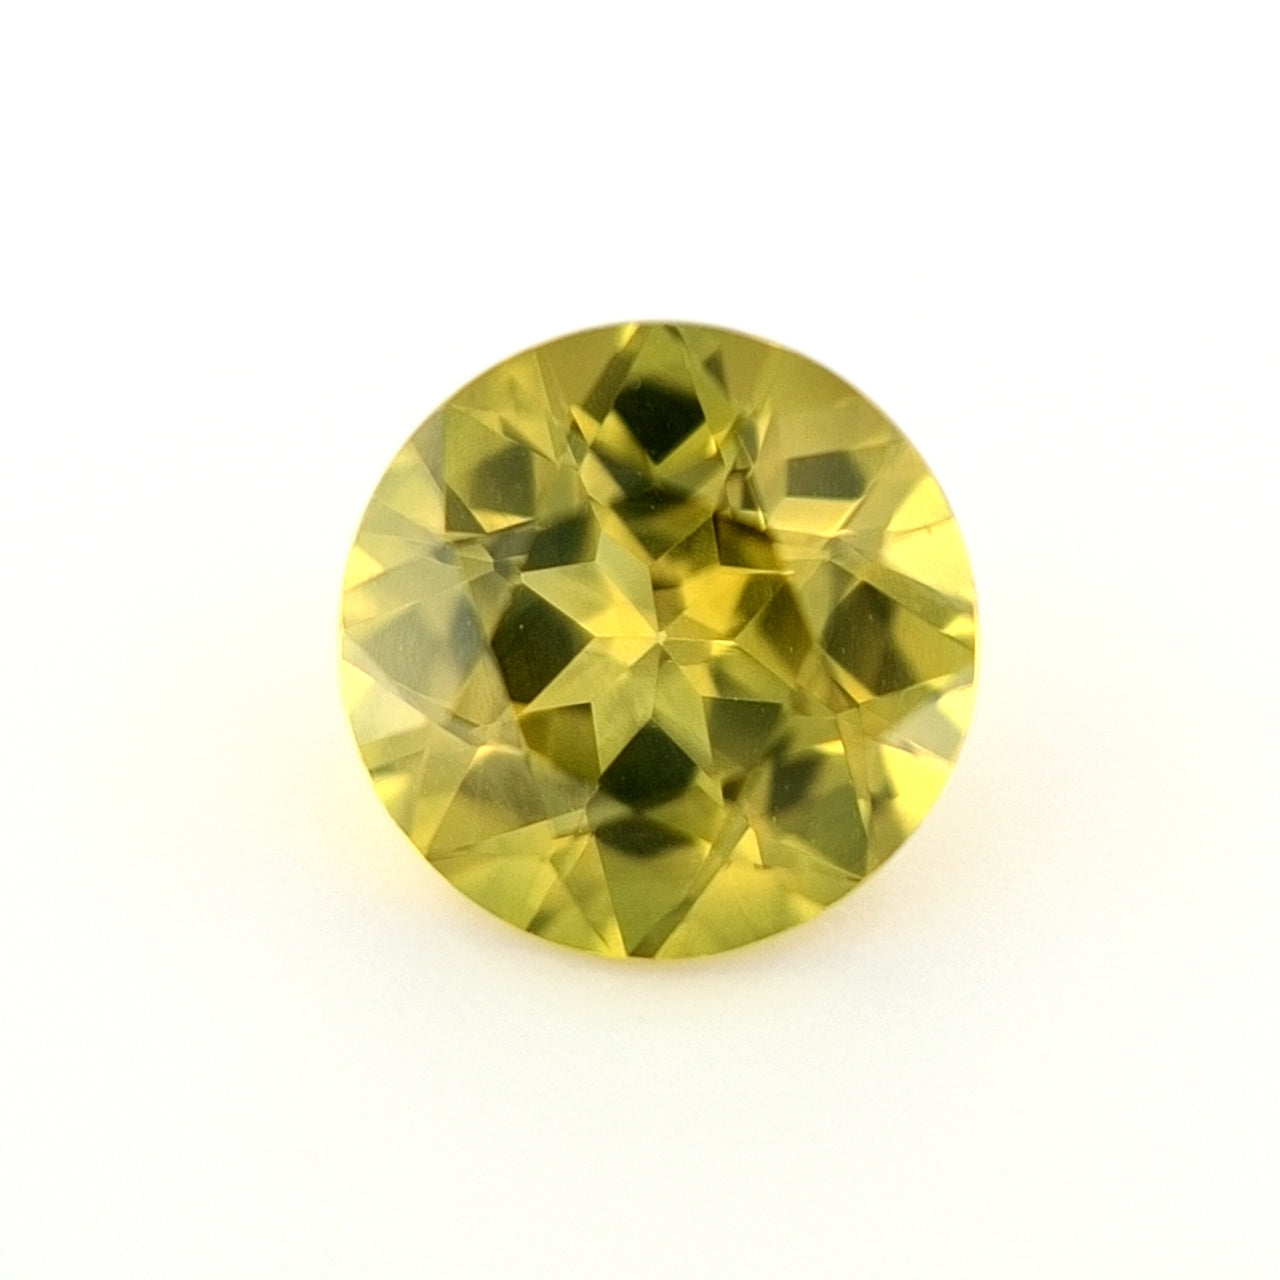 1.51ct Australian Sapphire, Yellow - Round